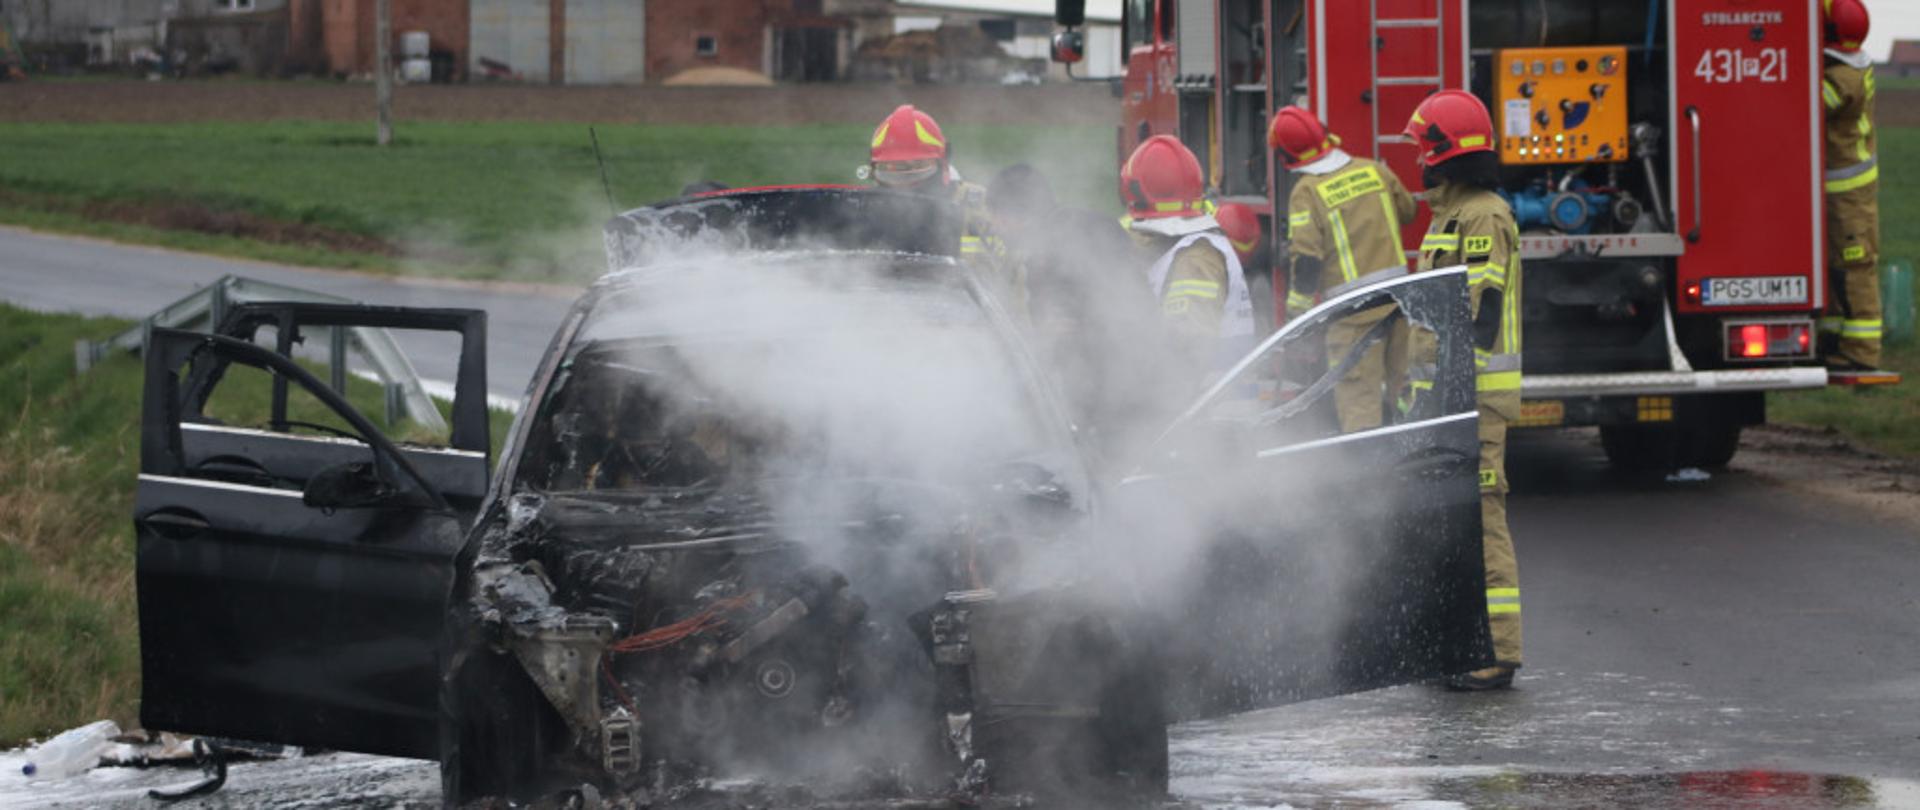 Pożar samochodu osobowego w Sikorzynie